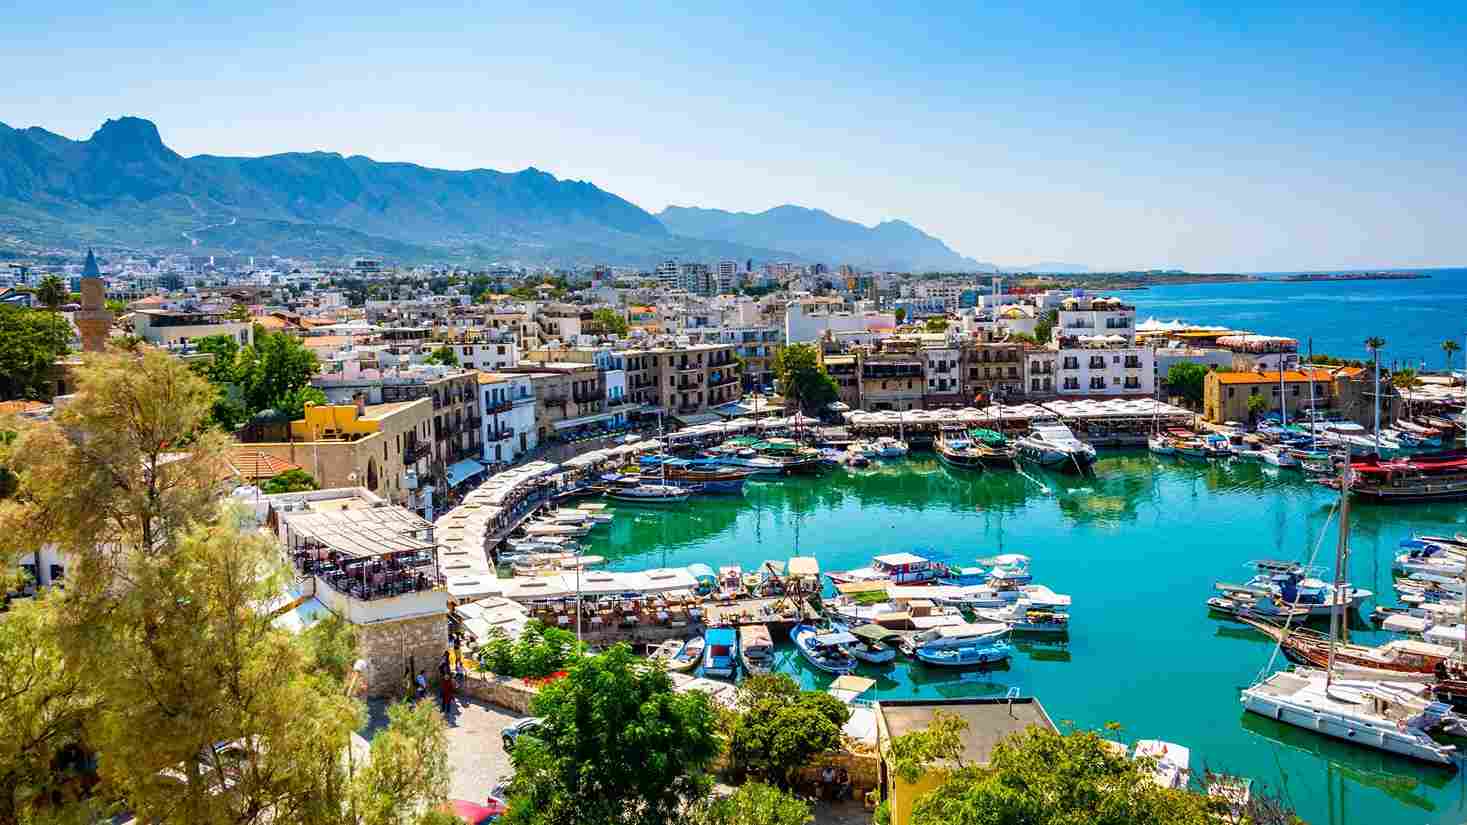 thành phố định cư tốt ở Síp